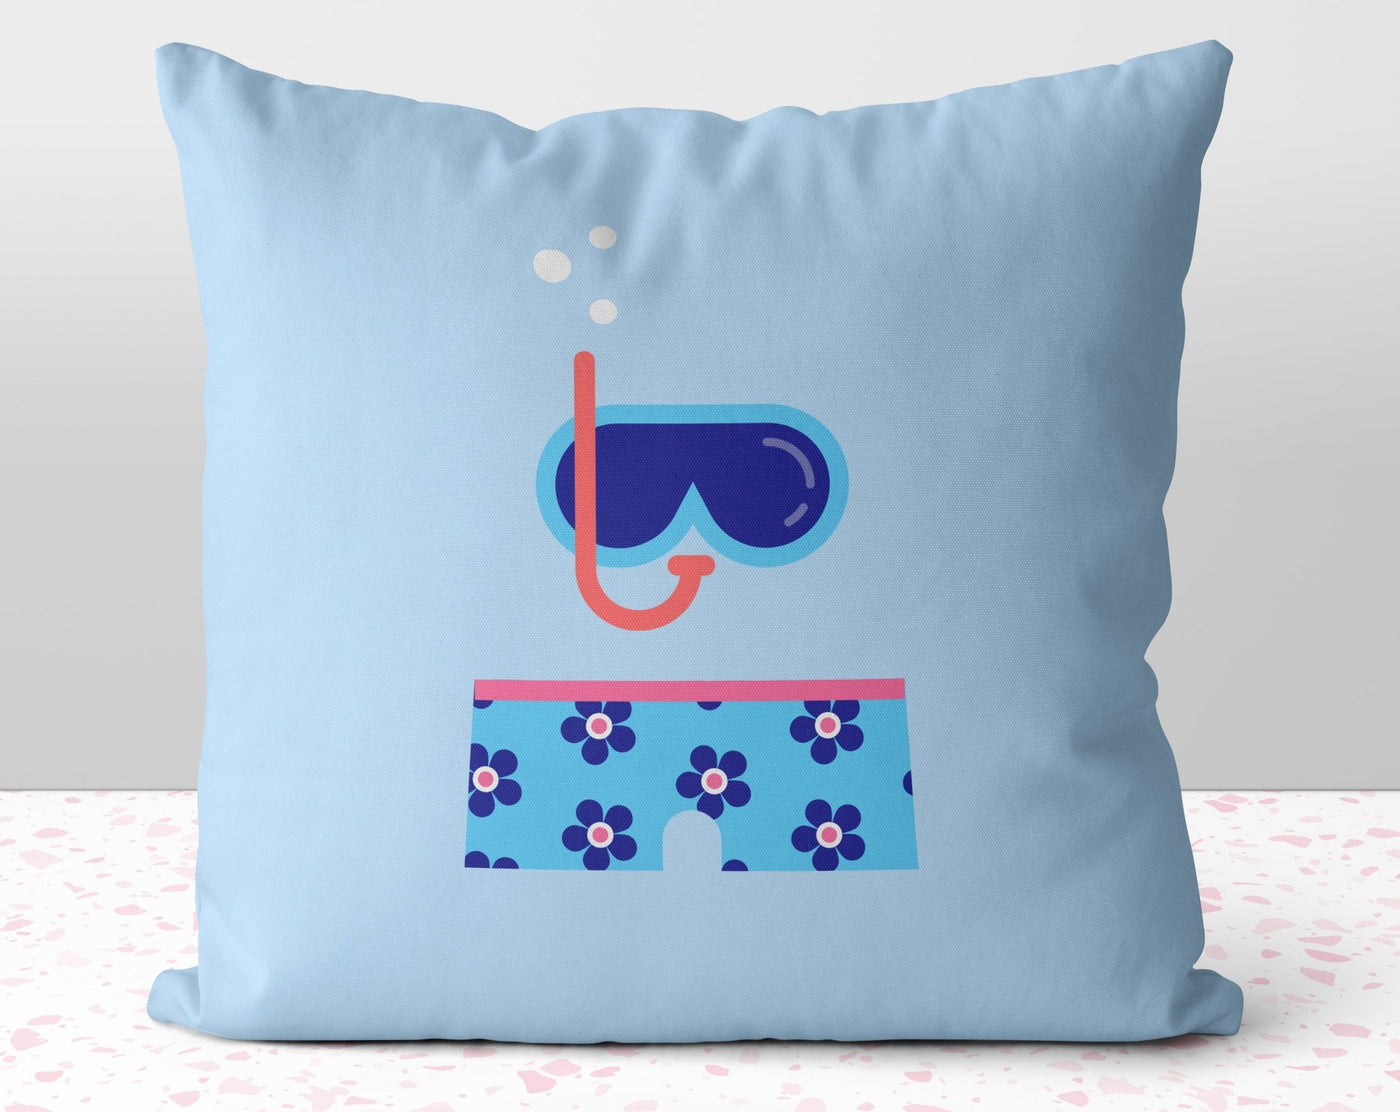 The Blue Scuba Diver and Blue Swim Trunks Square Pillow Cover Throw - Cush Potato Pillows